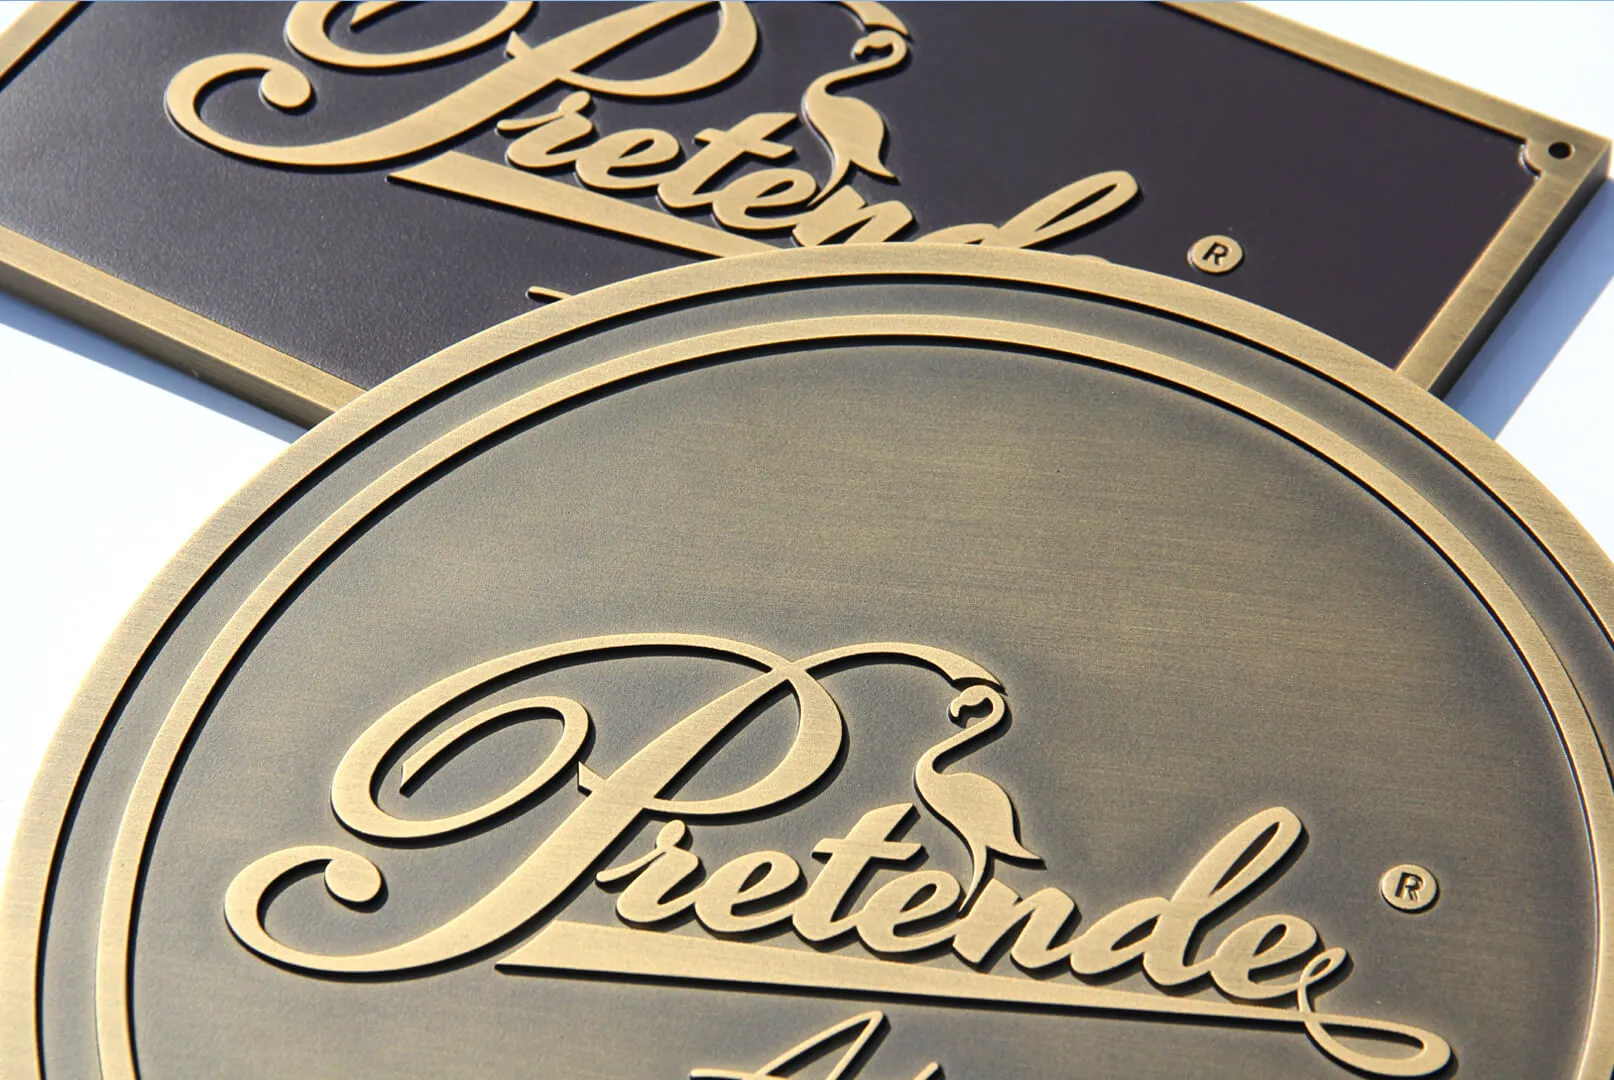 Placa de bronce fundido en 3D con el logotipo de Pretende